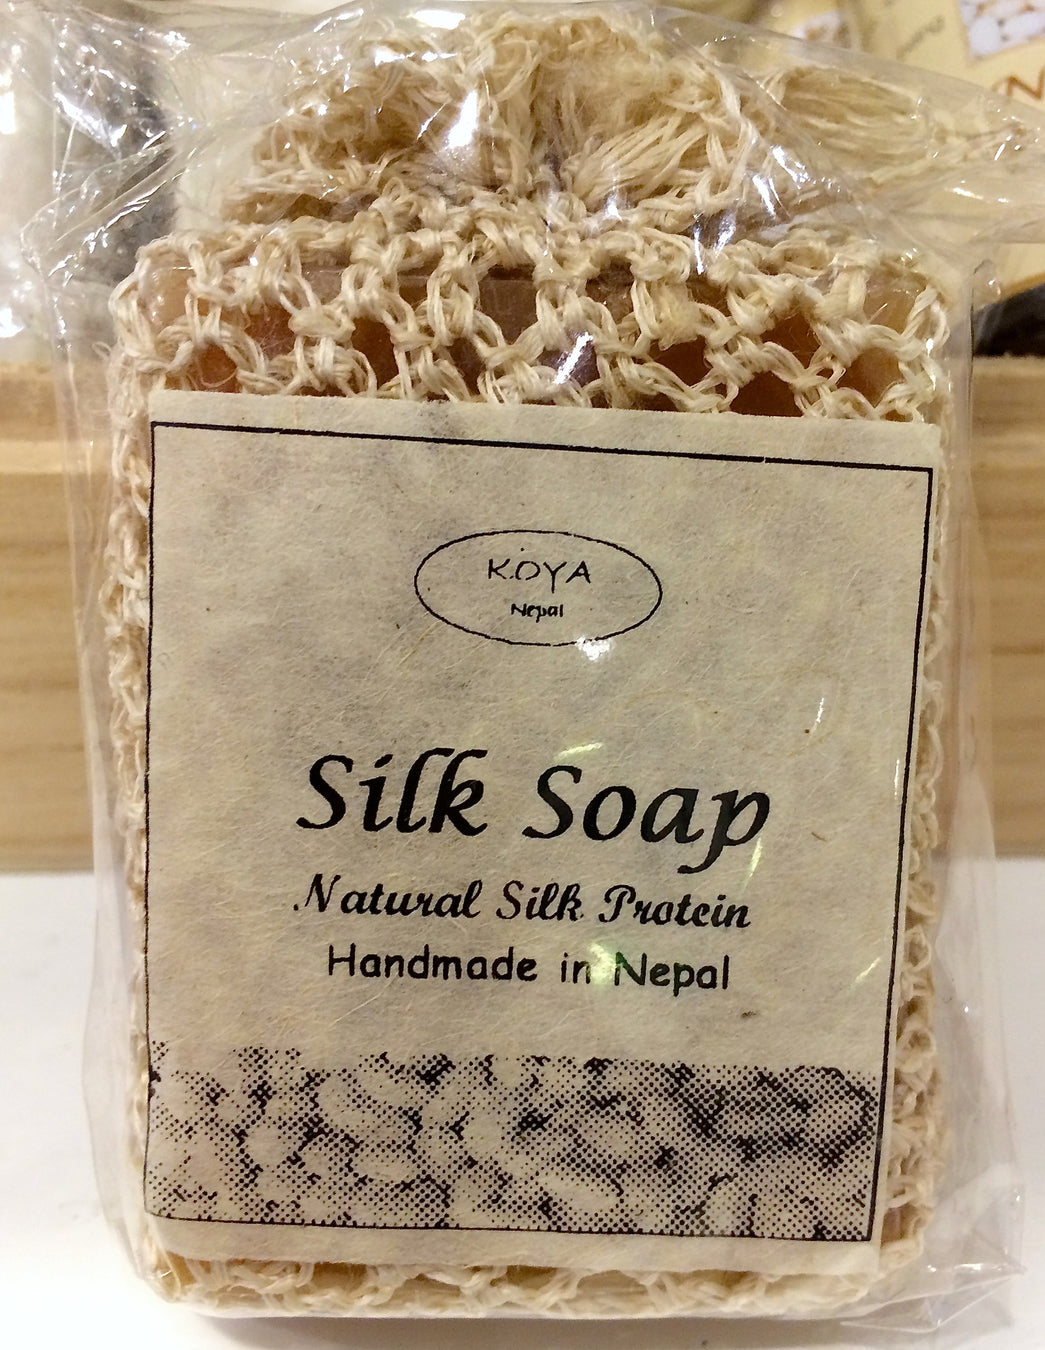 尼泊爾天然真絲肥皂 (連天然絲網) Nepal Silk Soap with Silk Net